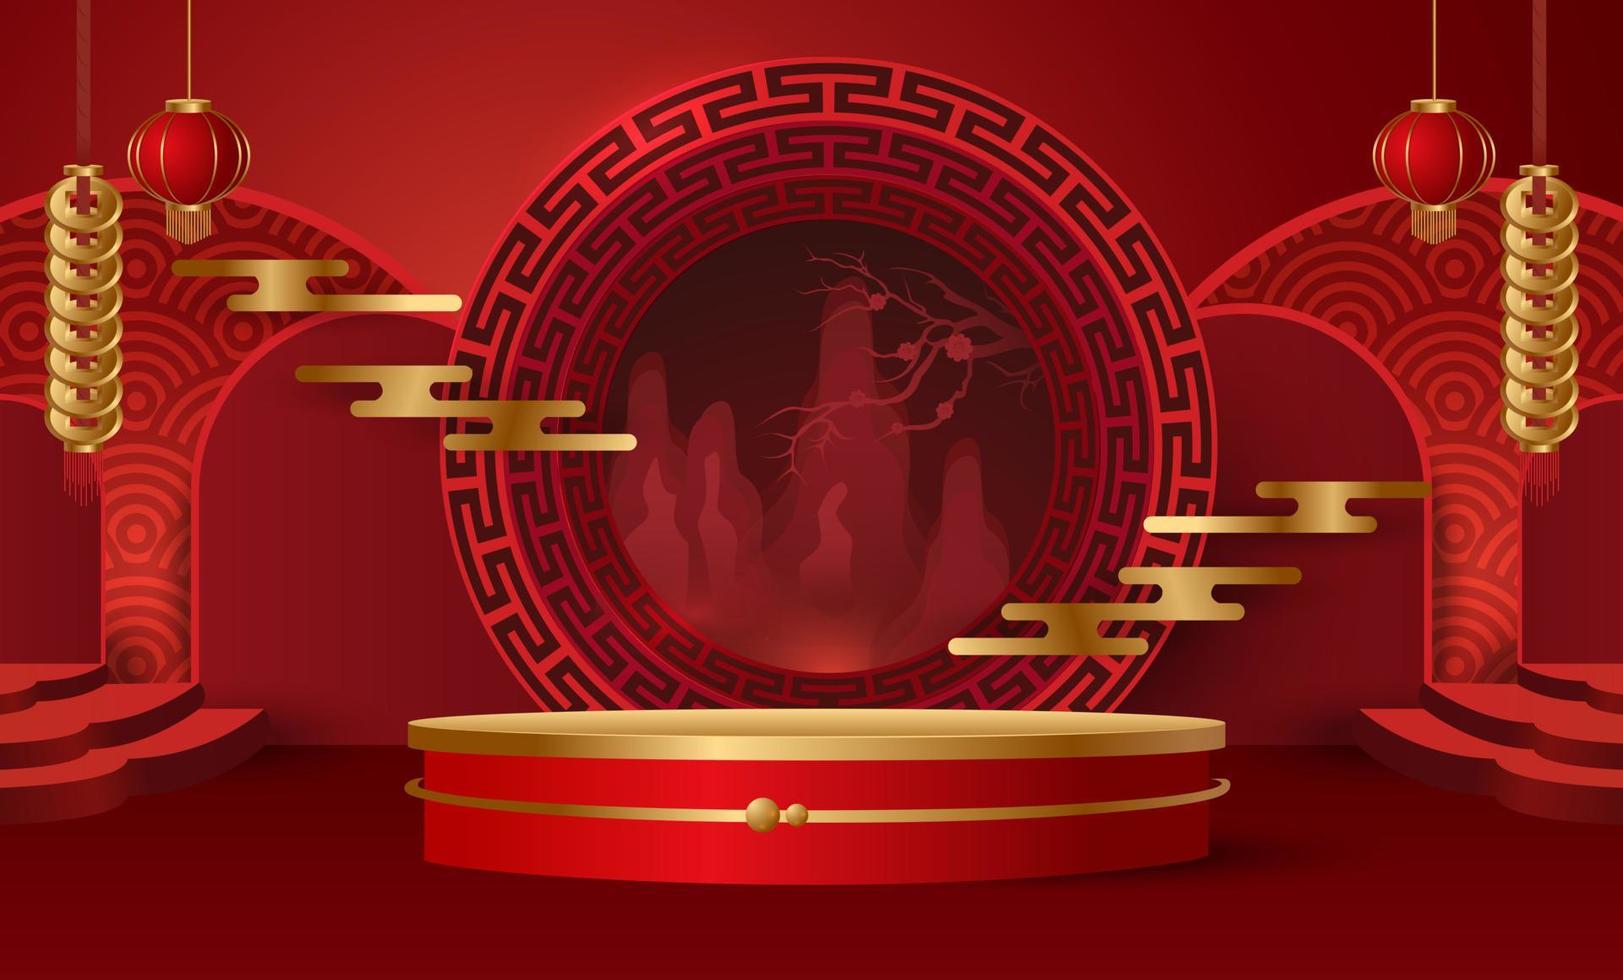 podium och bakgrund för kinesiskt nyår, kinesiska festivaler, midhöstfestivalen, blomma och asiatiska element på bakgrund. vektor